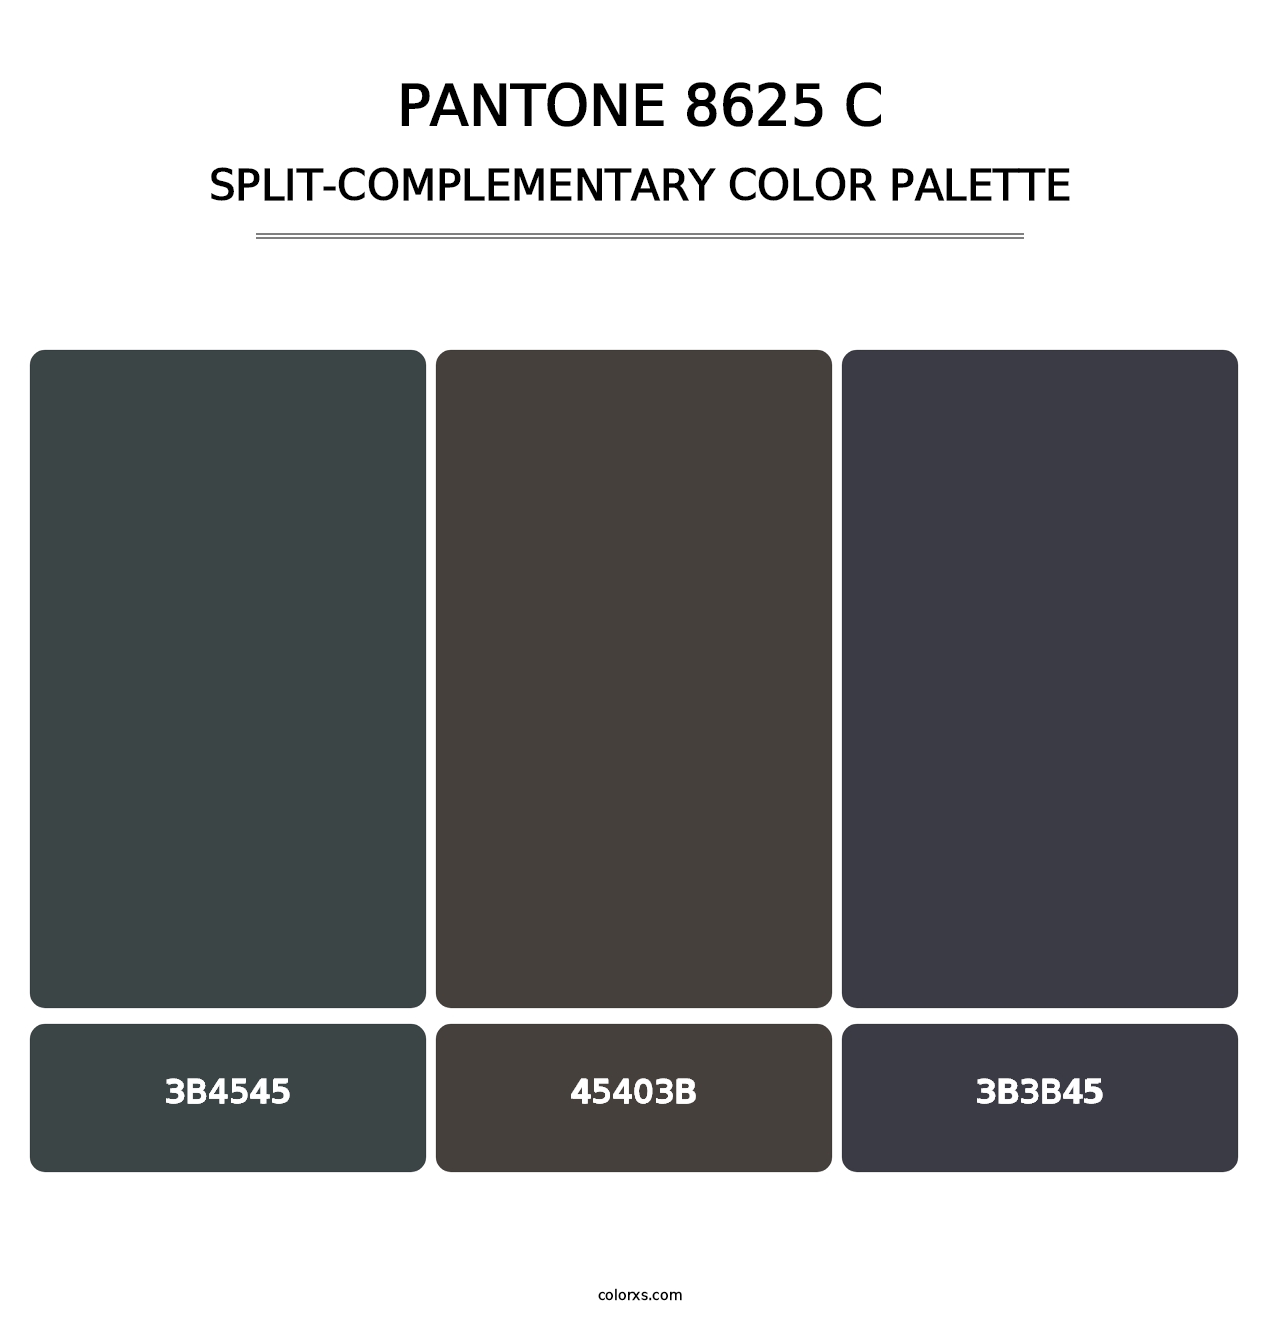 PANTONE 8625 C - Split-Complementary Color Palette